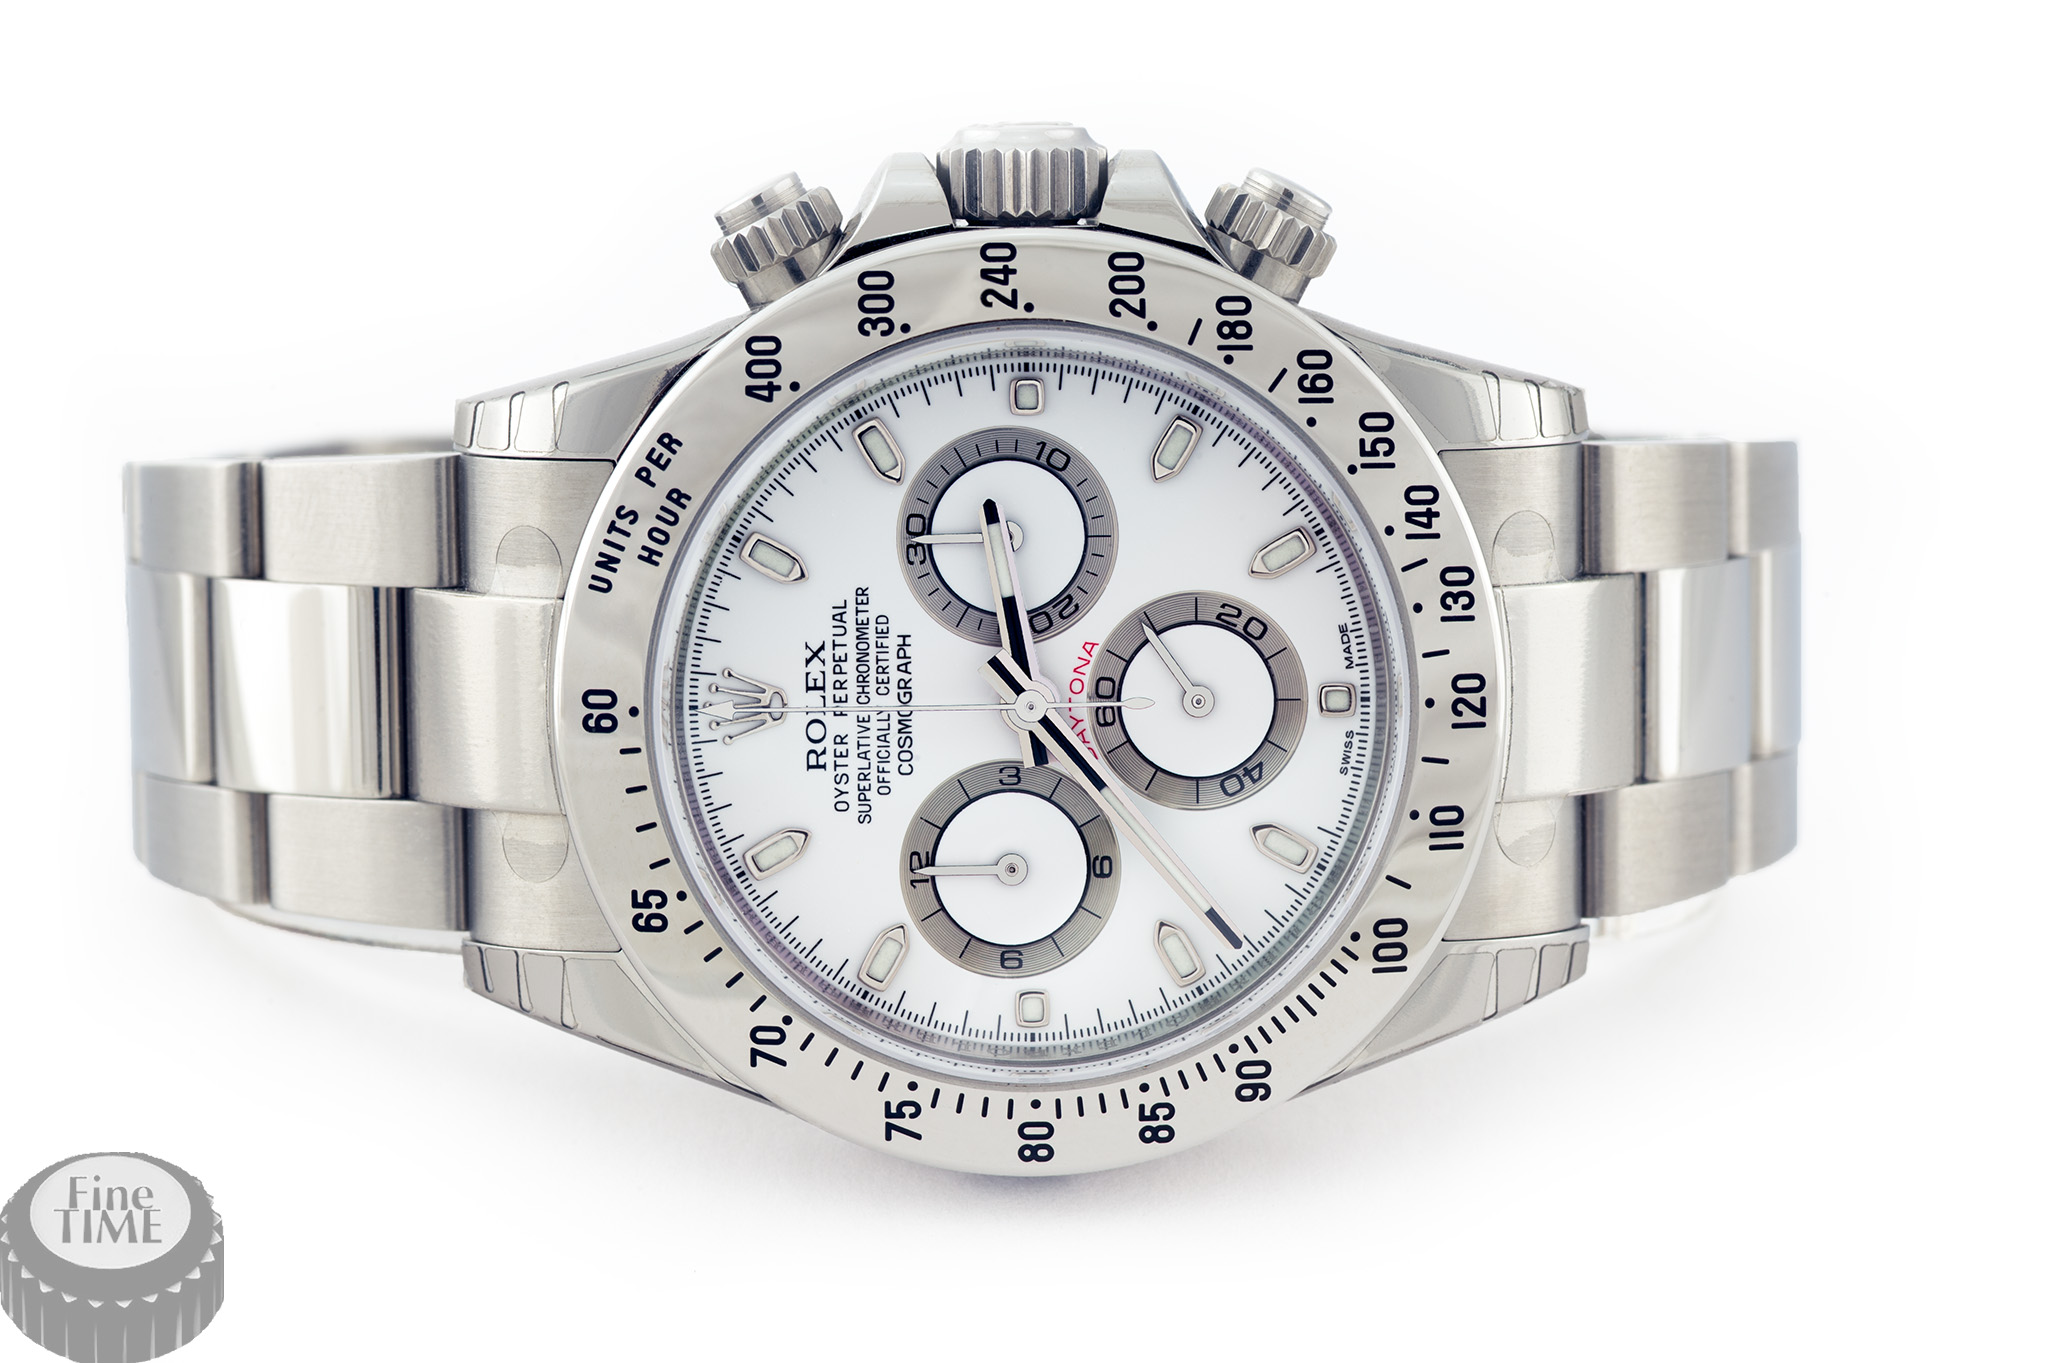 Rolex Daytona 116520 NOS white dial